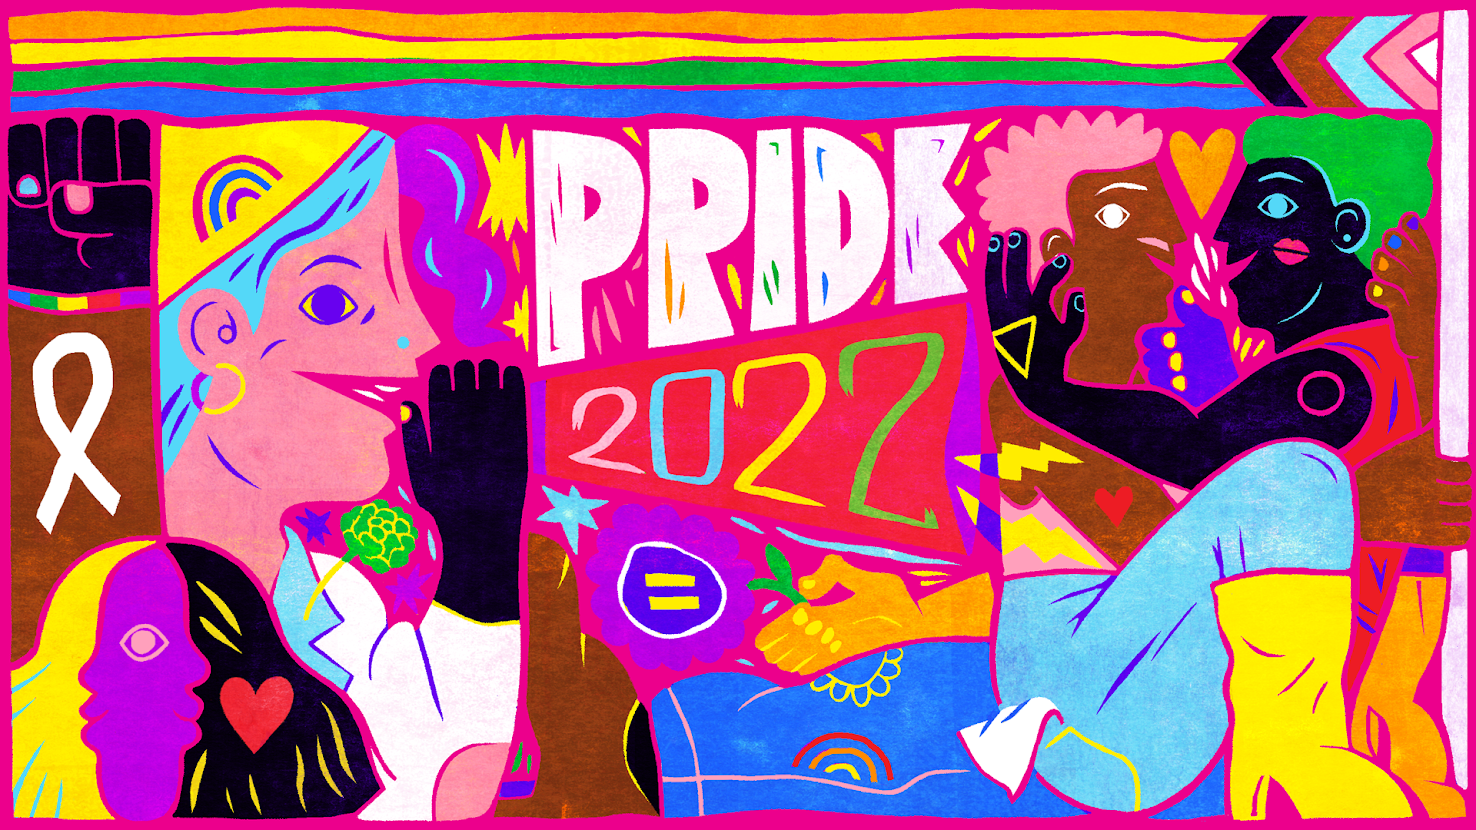 buzzfeed pride artwork